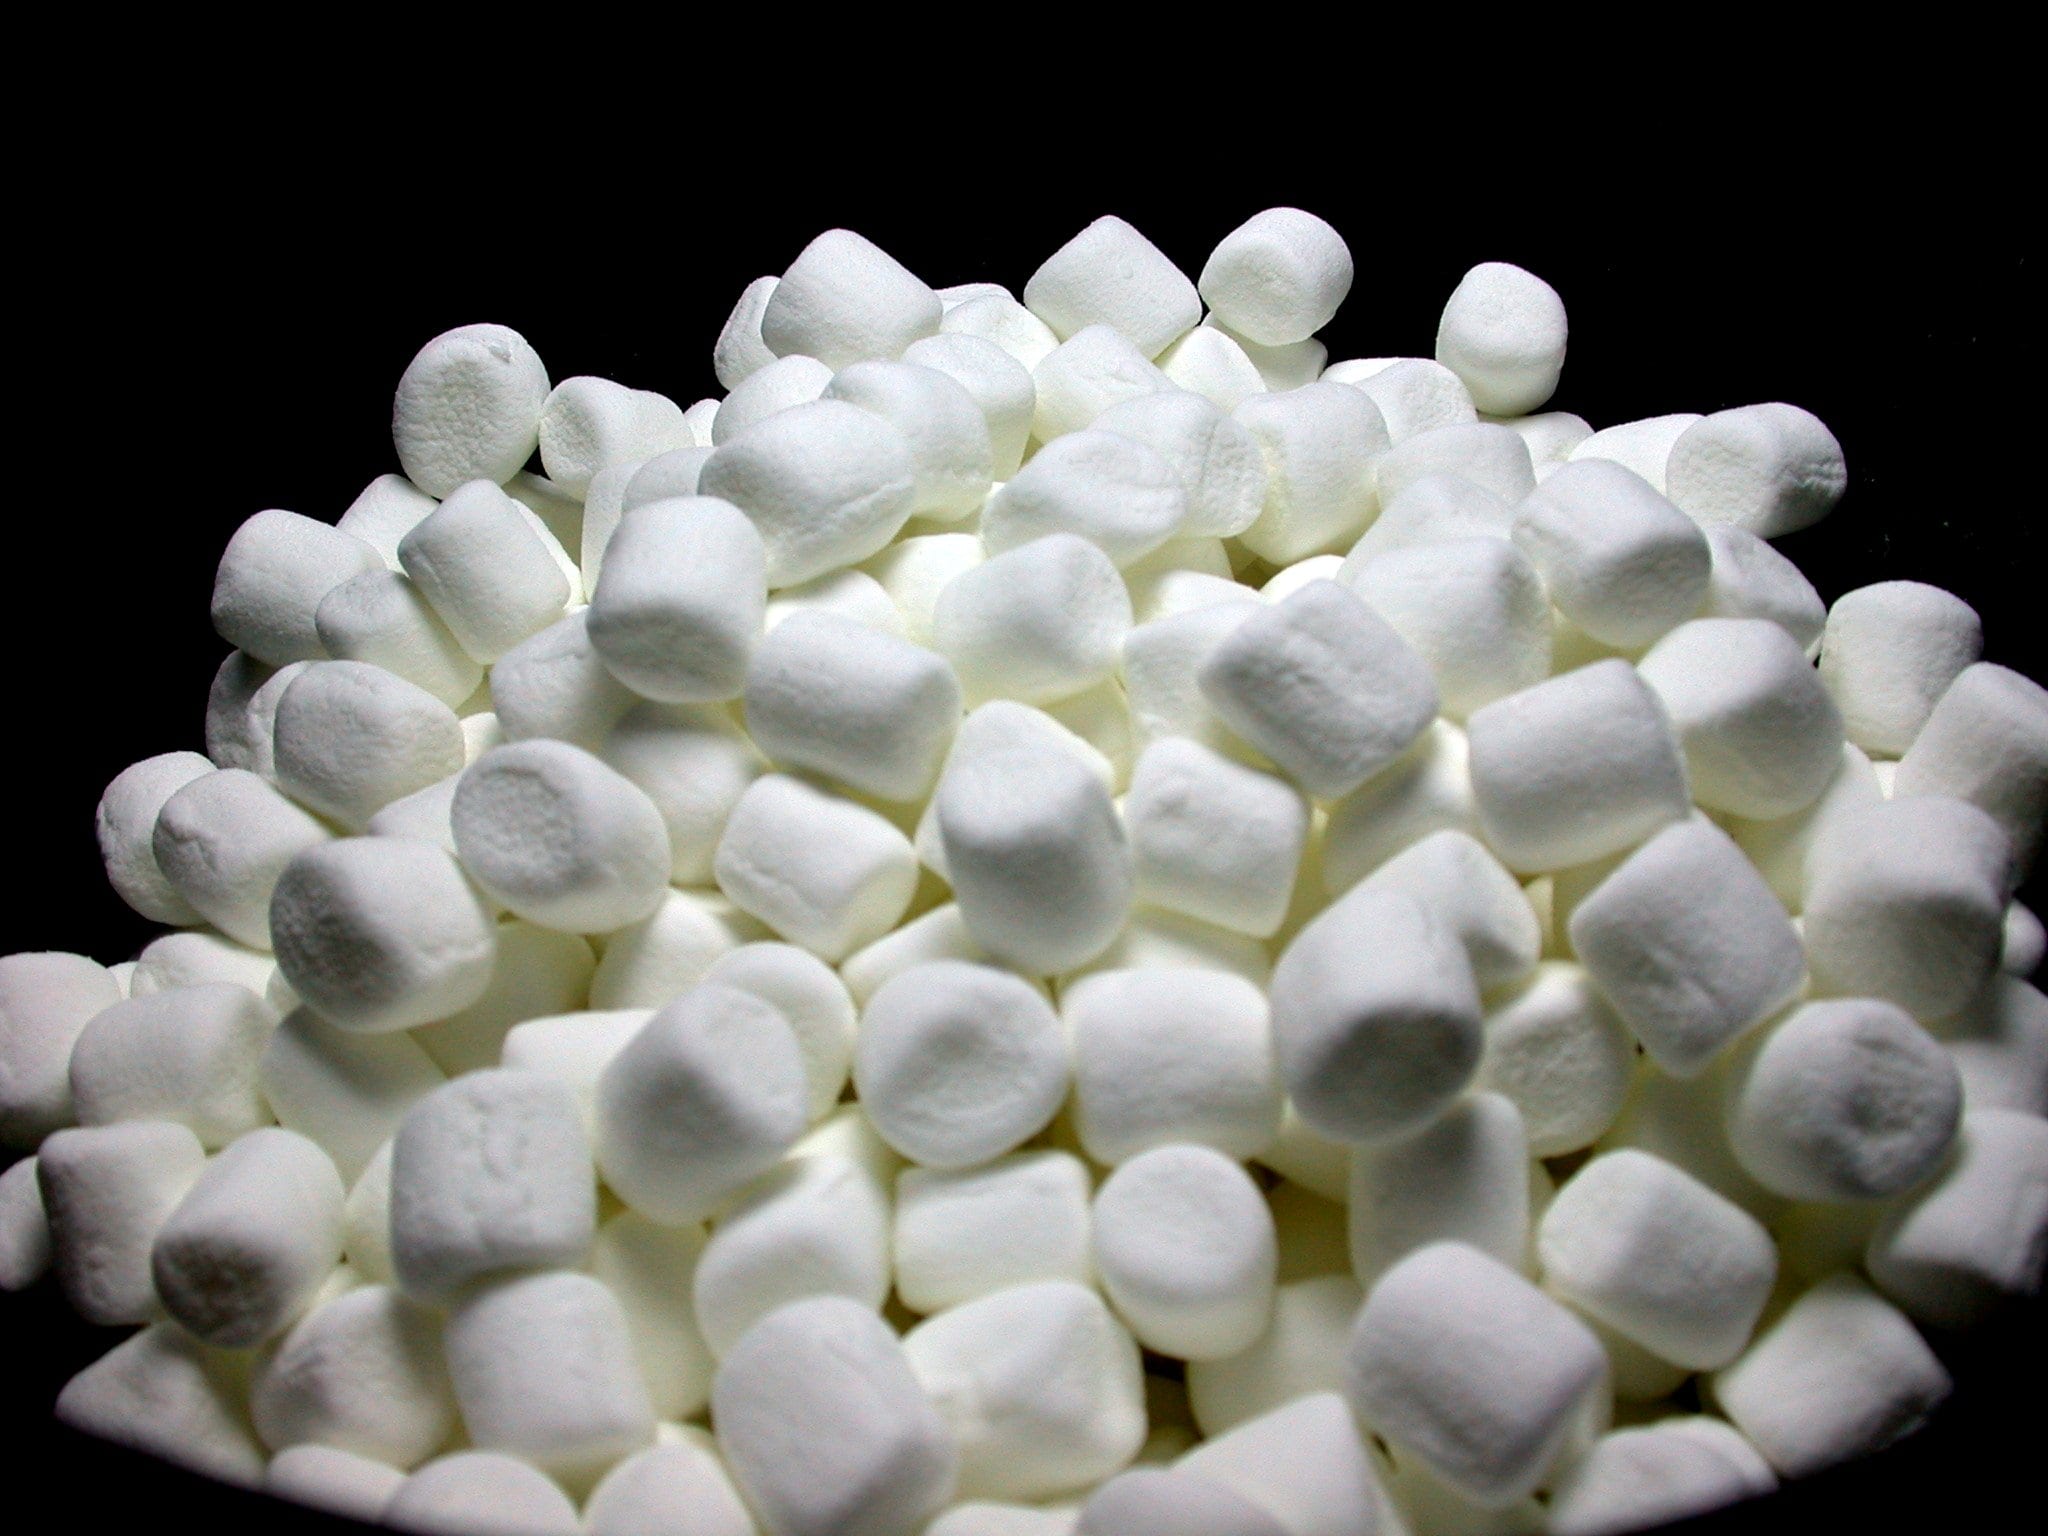 PileMiniMarshmallows